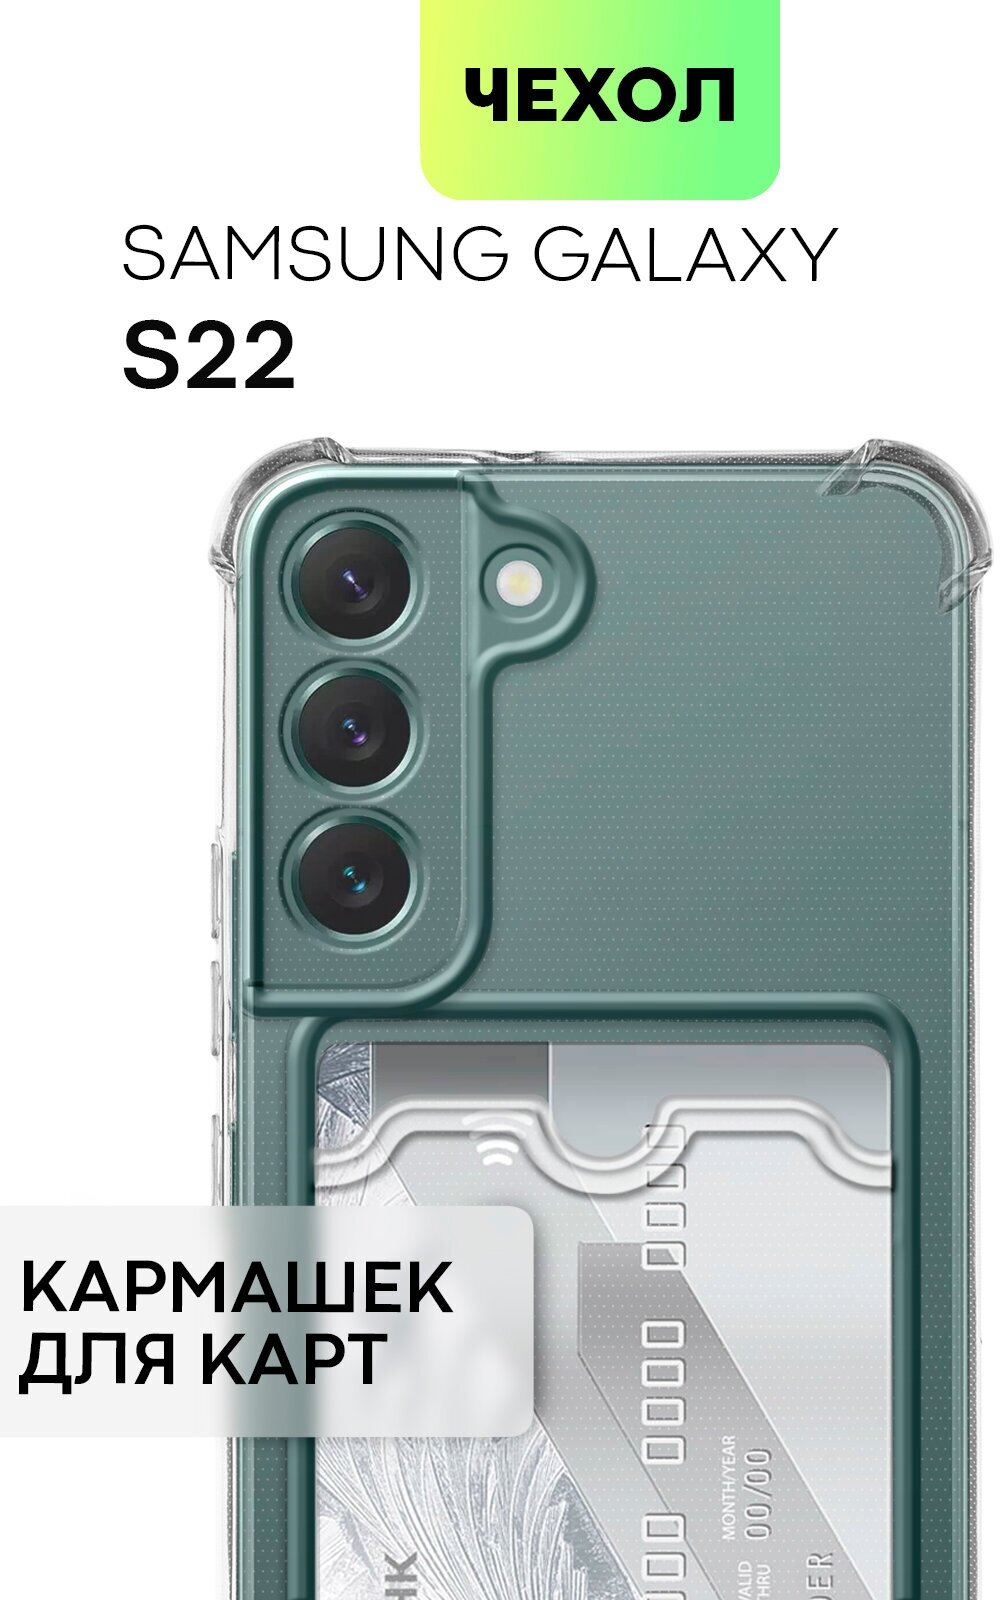 Чехол с кармашком для Samsung Galaxy S22 (Самсунг Галакси С22) противоударный усиленный защитой камер картхолдер для карточек BROSCORP прозрачный